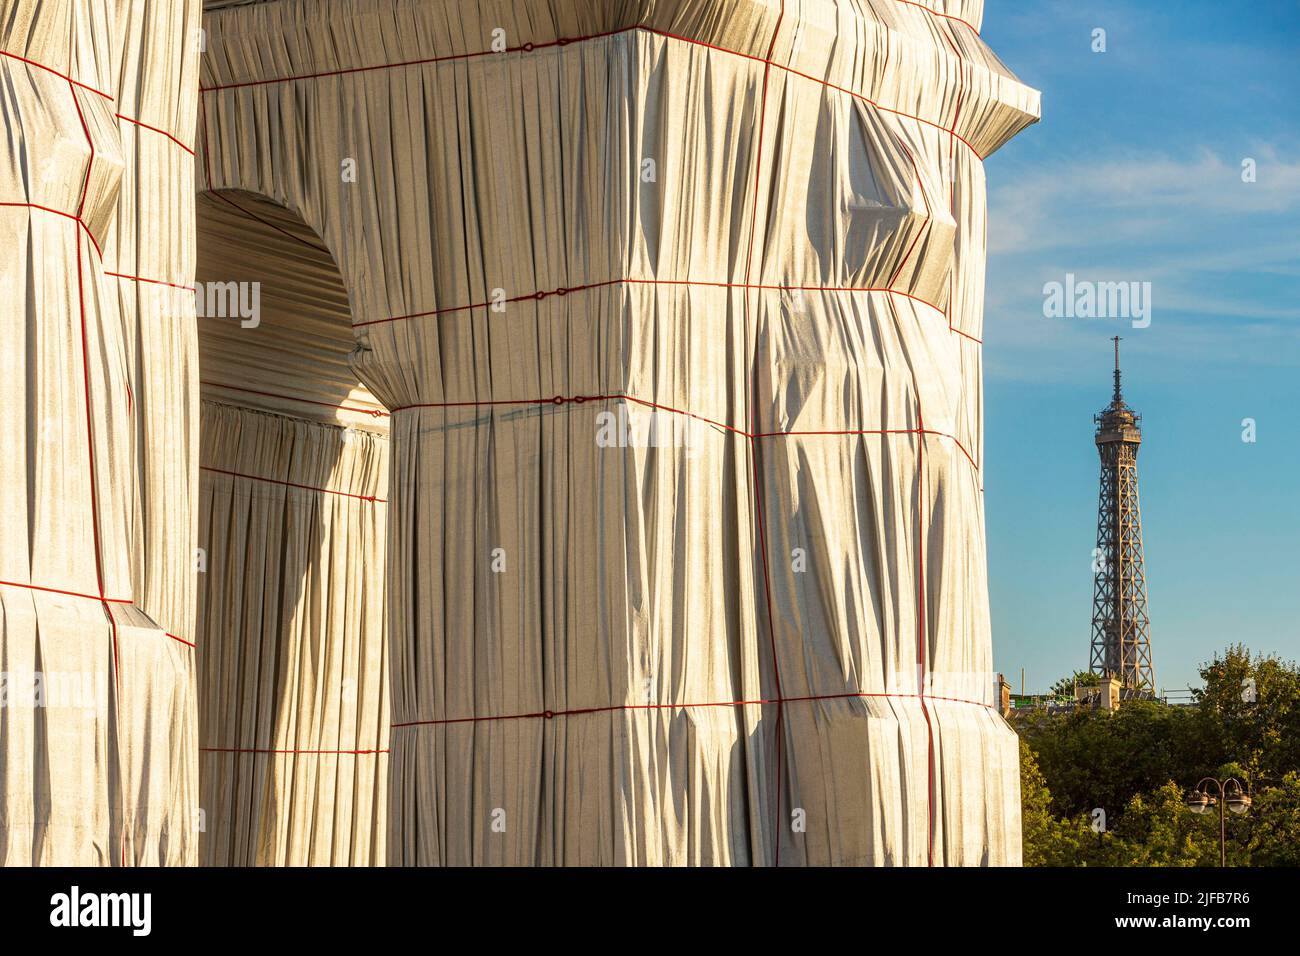 Francia, Parigi, Place de l'Etoile, Arco di Trionfo avvolto da Jeanne-Claude e Christo, dal 18 settembre al 3 ottobre 2021 Foto Stock